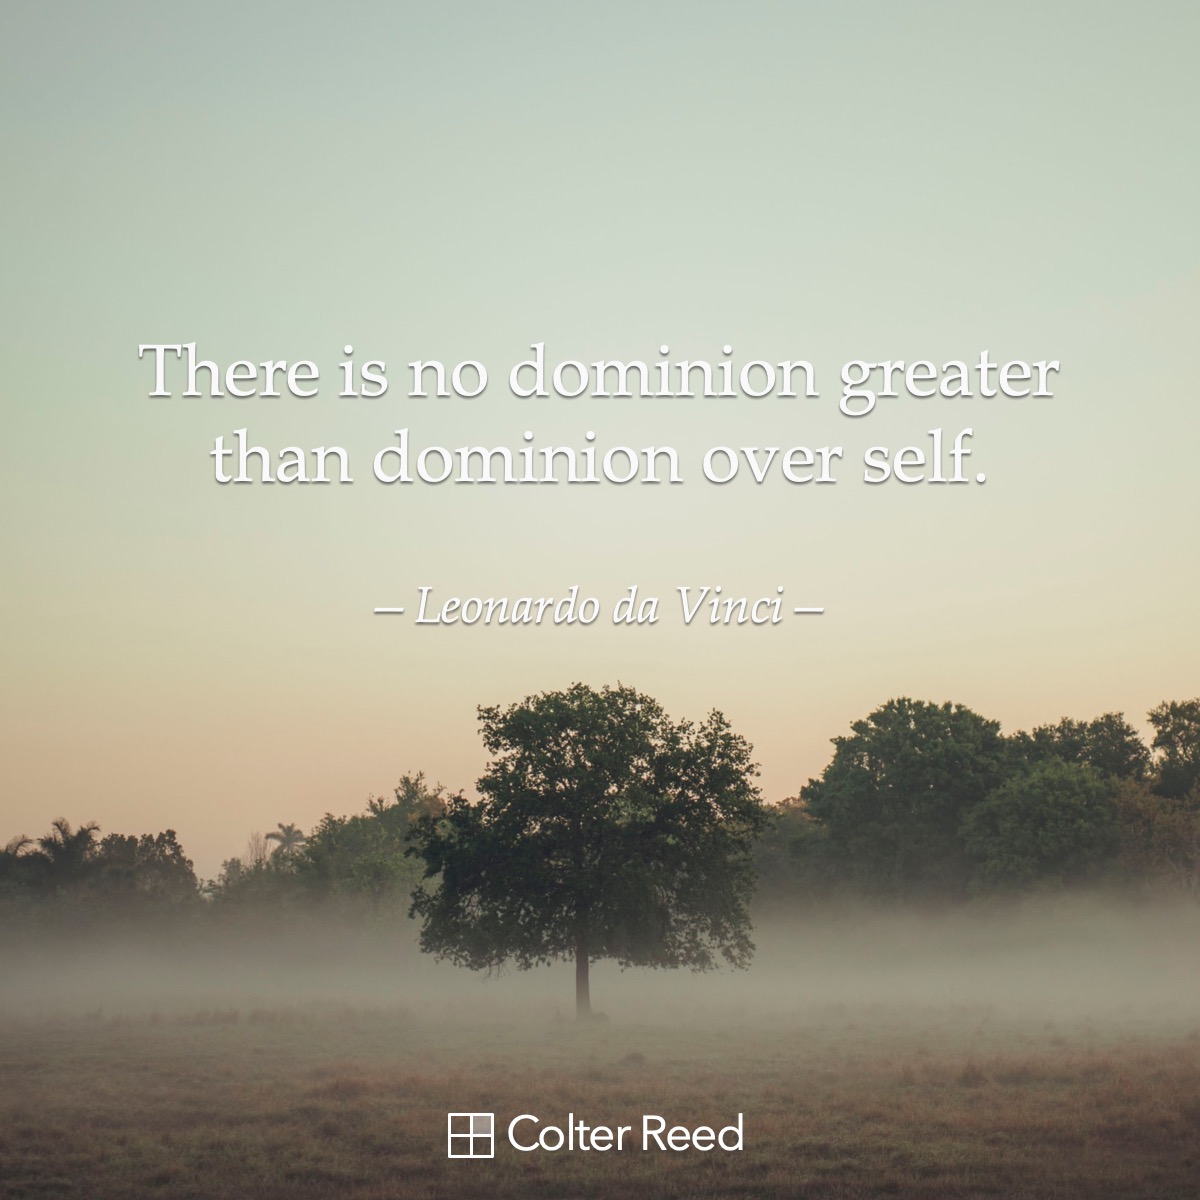 There is no dominion greater than dominion over self. —Leonardo da Vinci